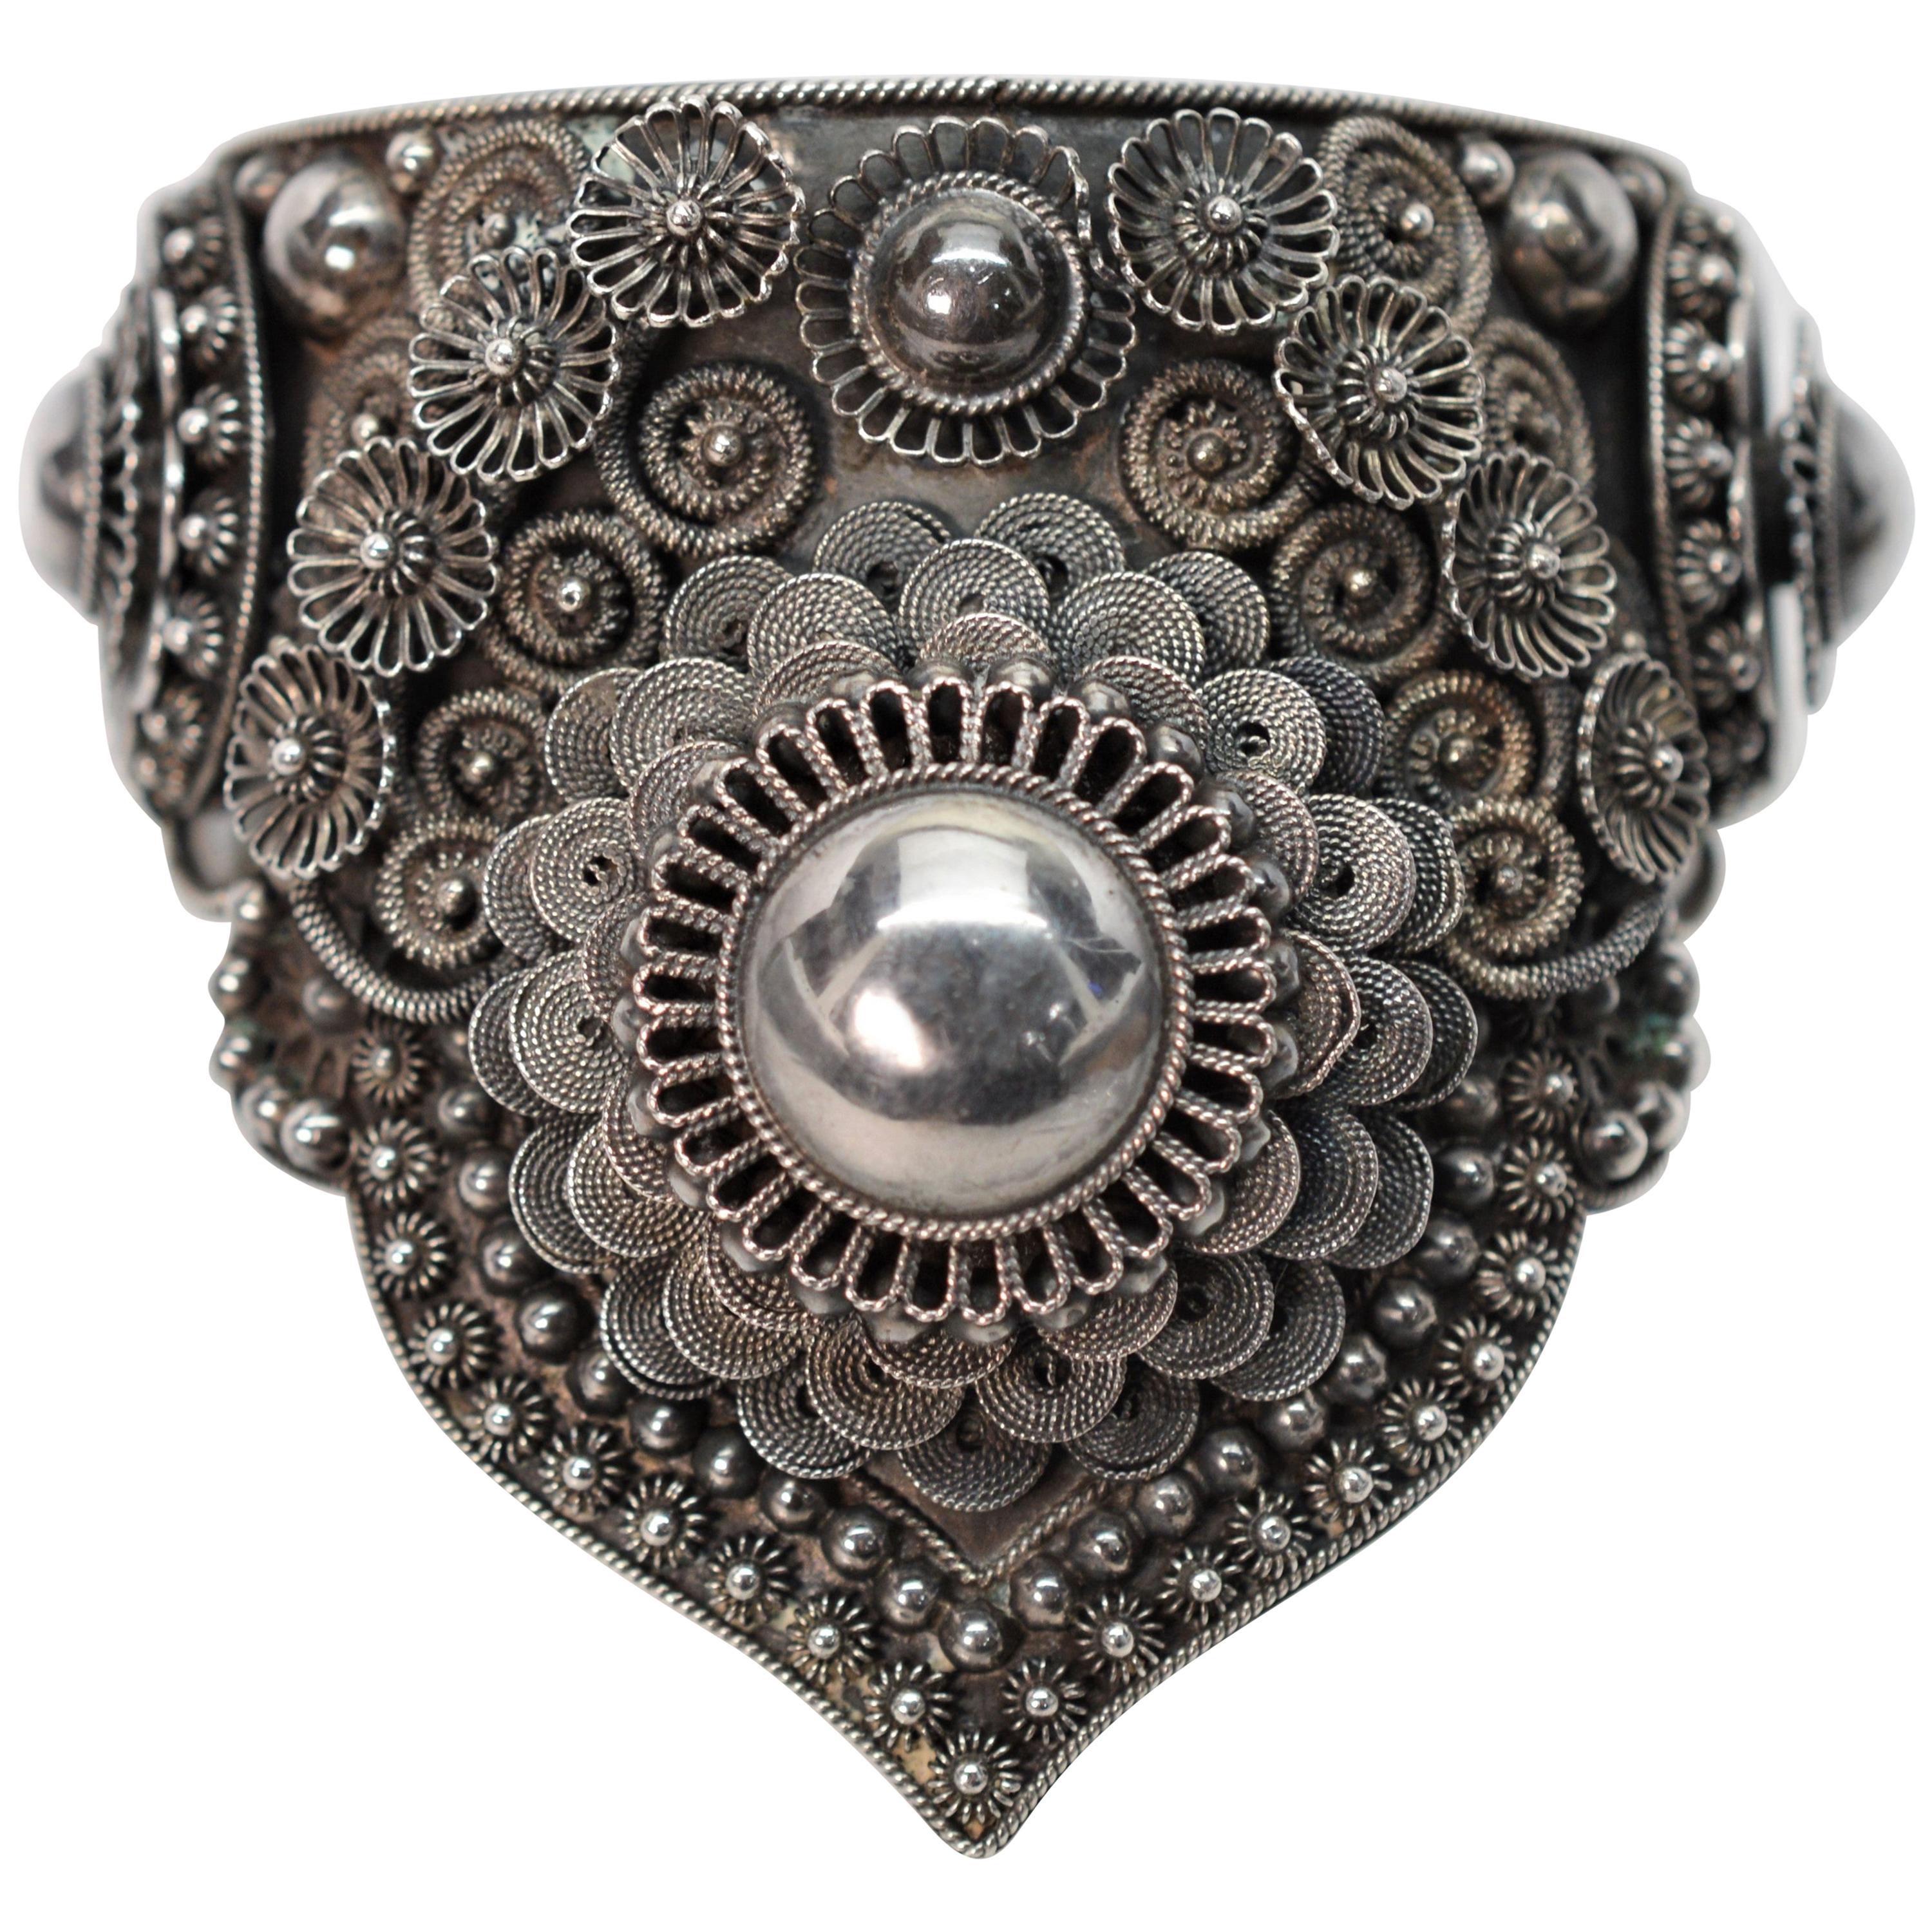 Siam Silver Ornate Cuff Bracelet